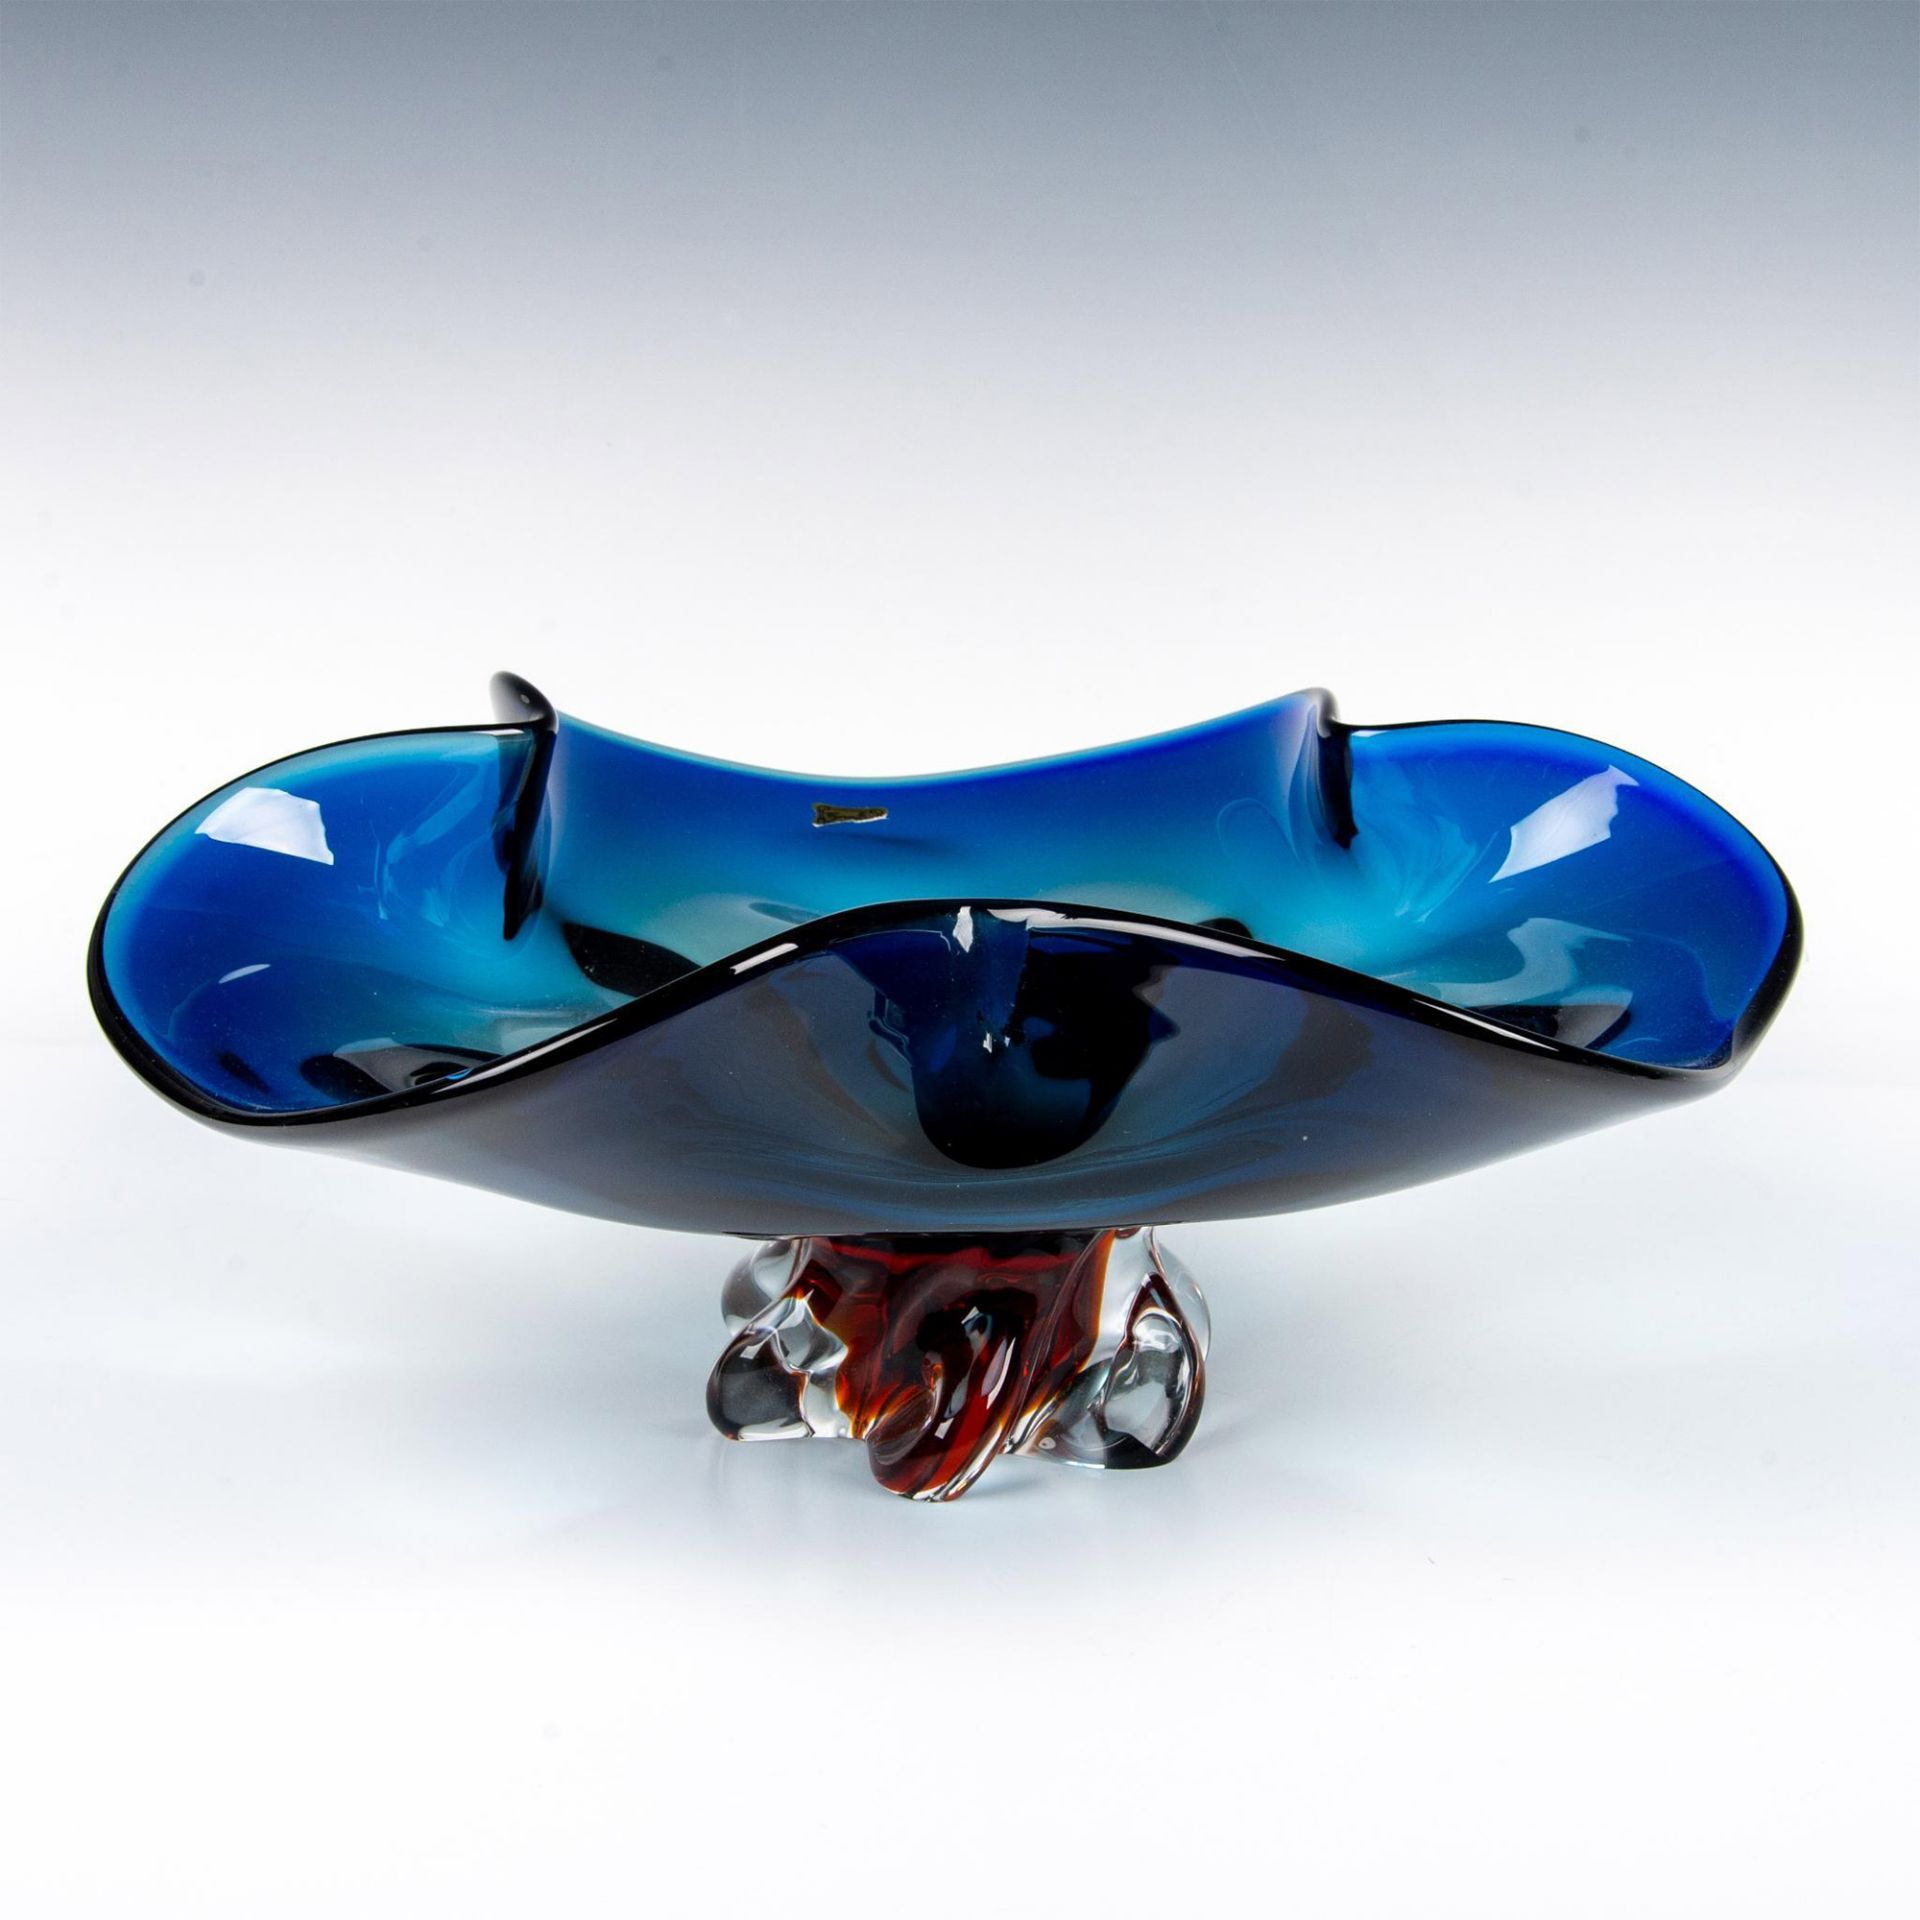 Egermann Czech Republic Art Glass Bowl - Image 4 of 5